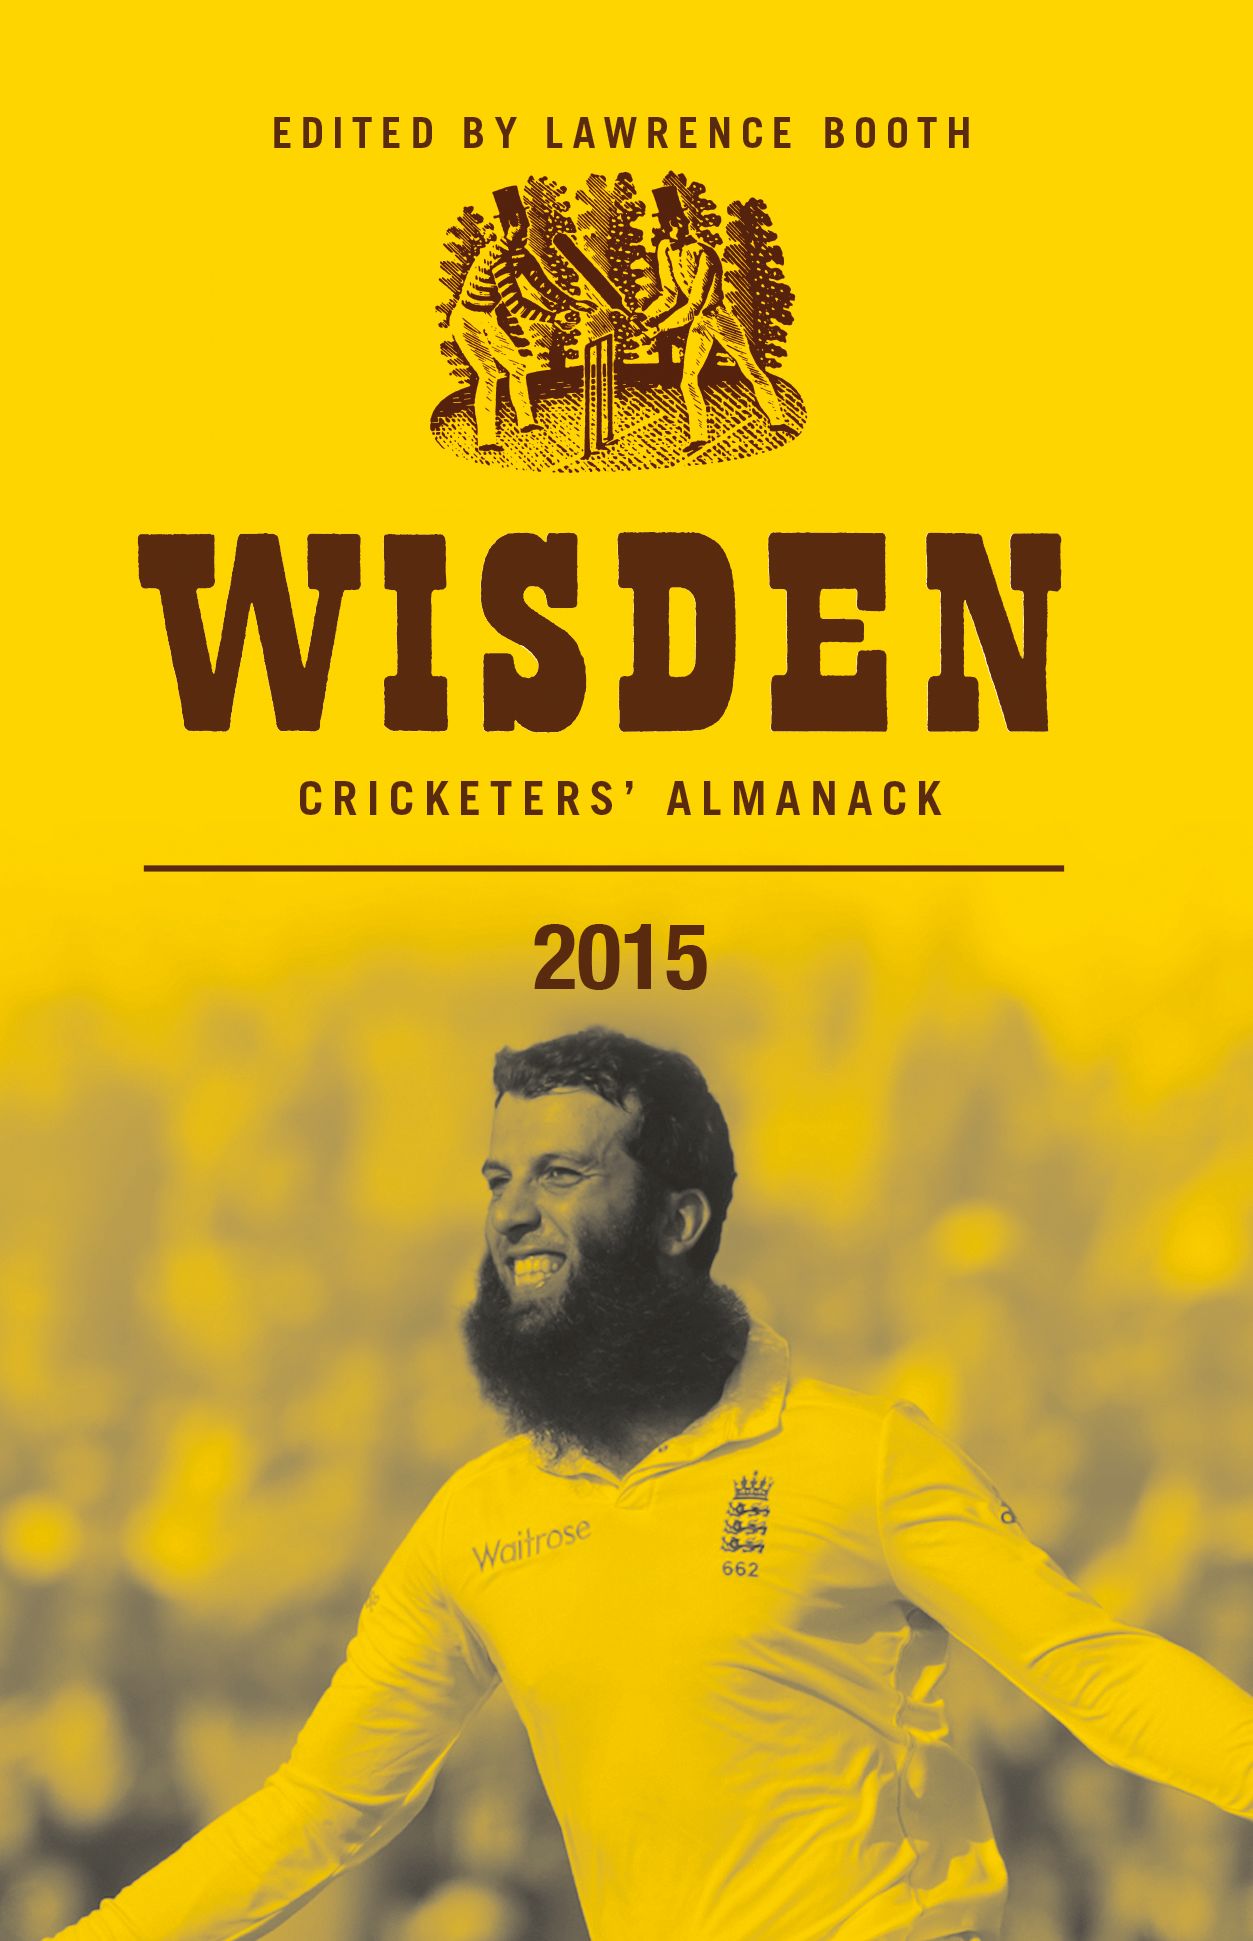 The 2015 Wisden Cricketers' Almanack